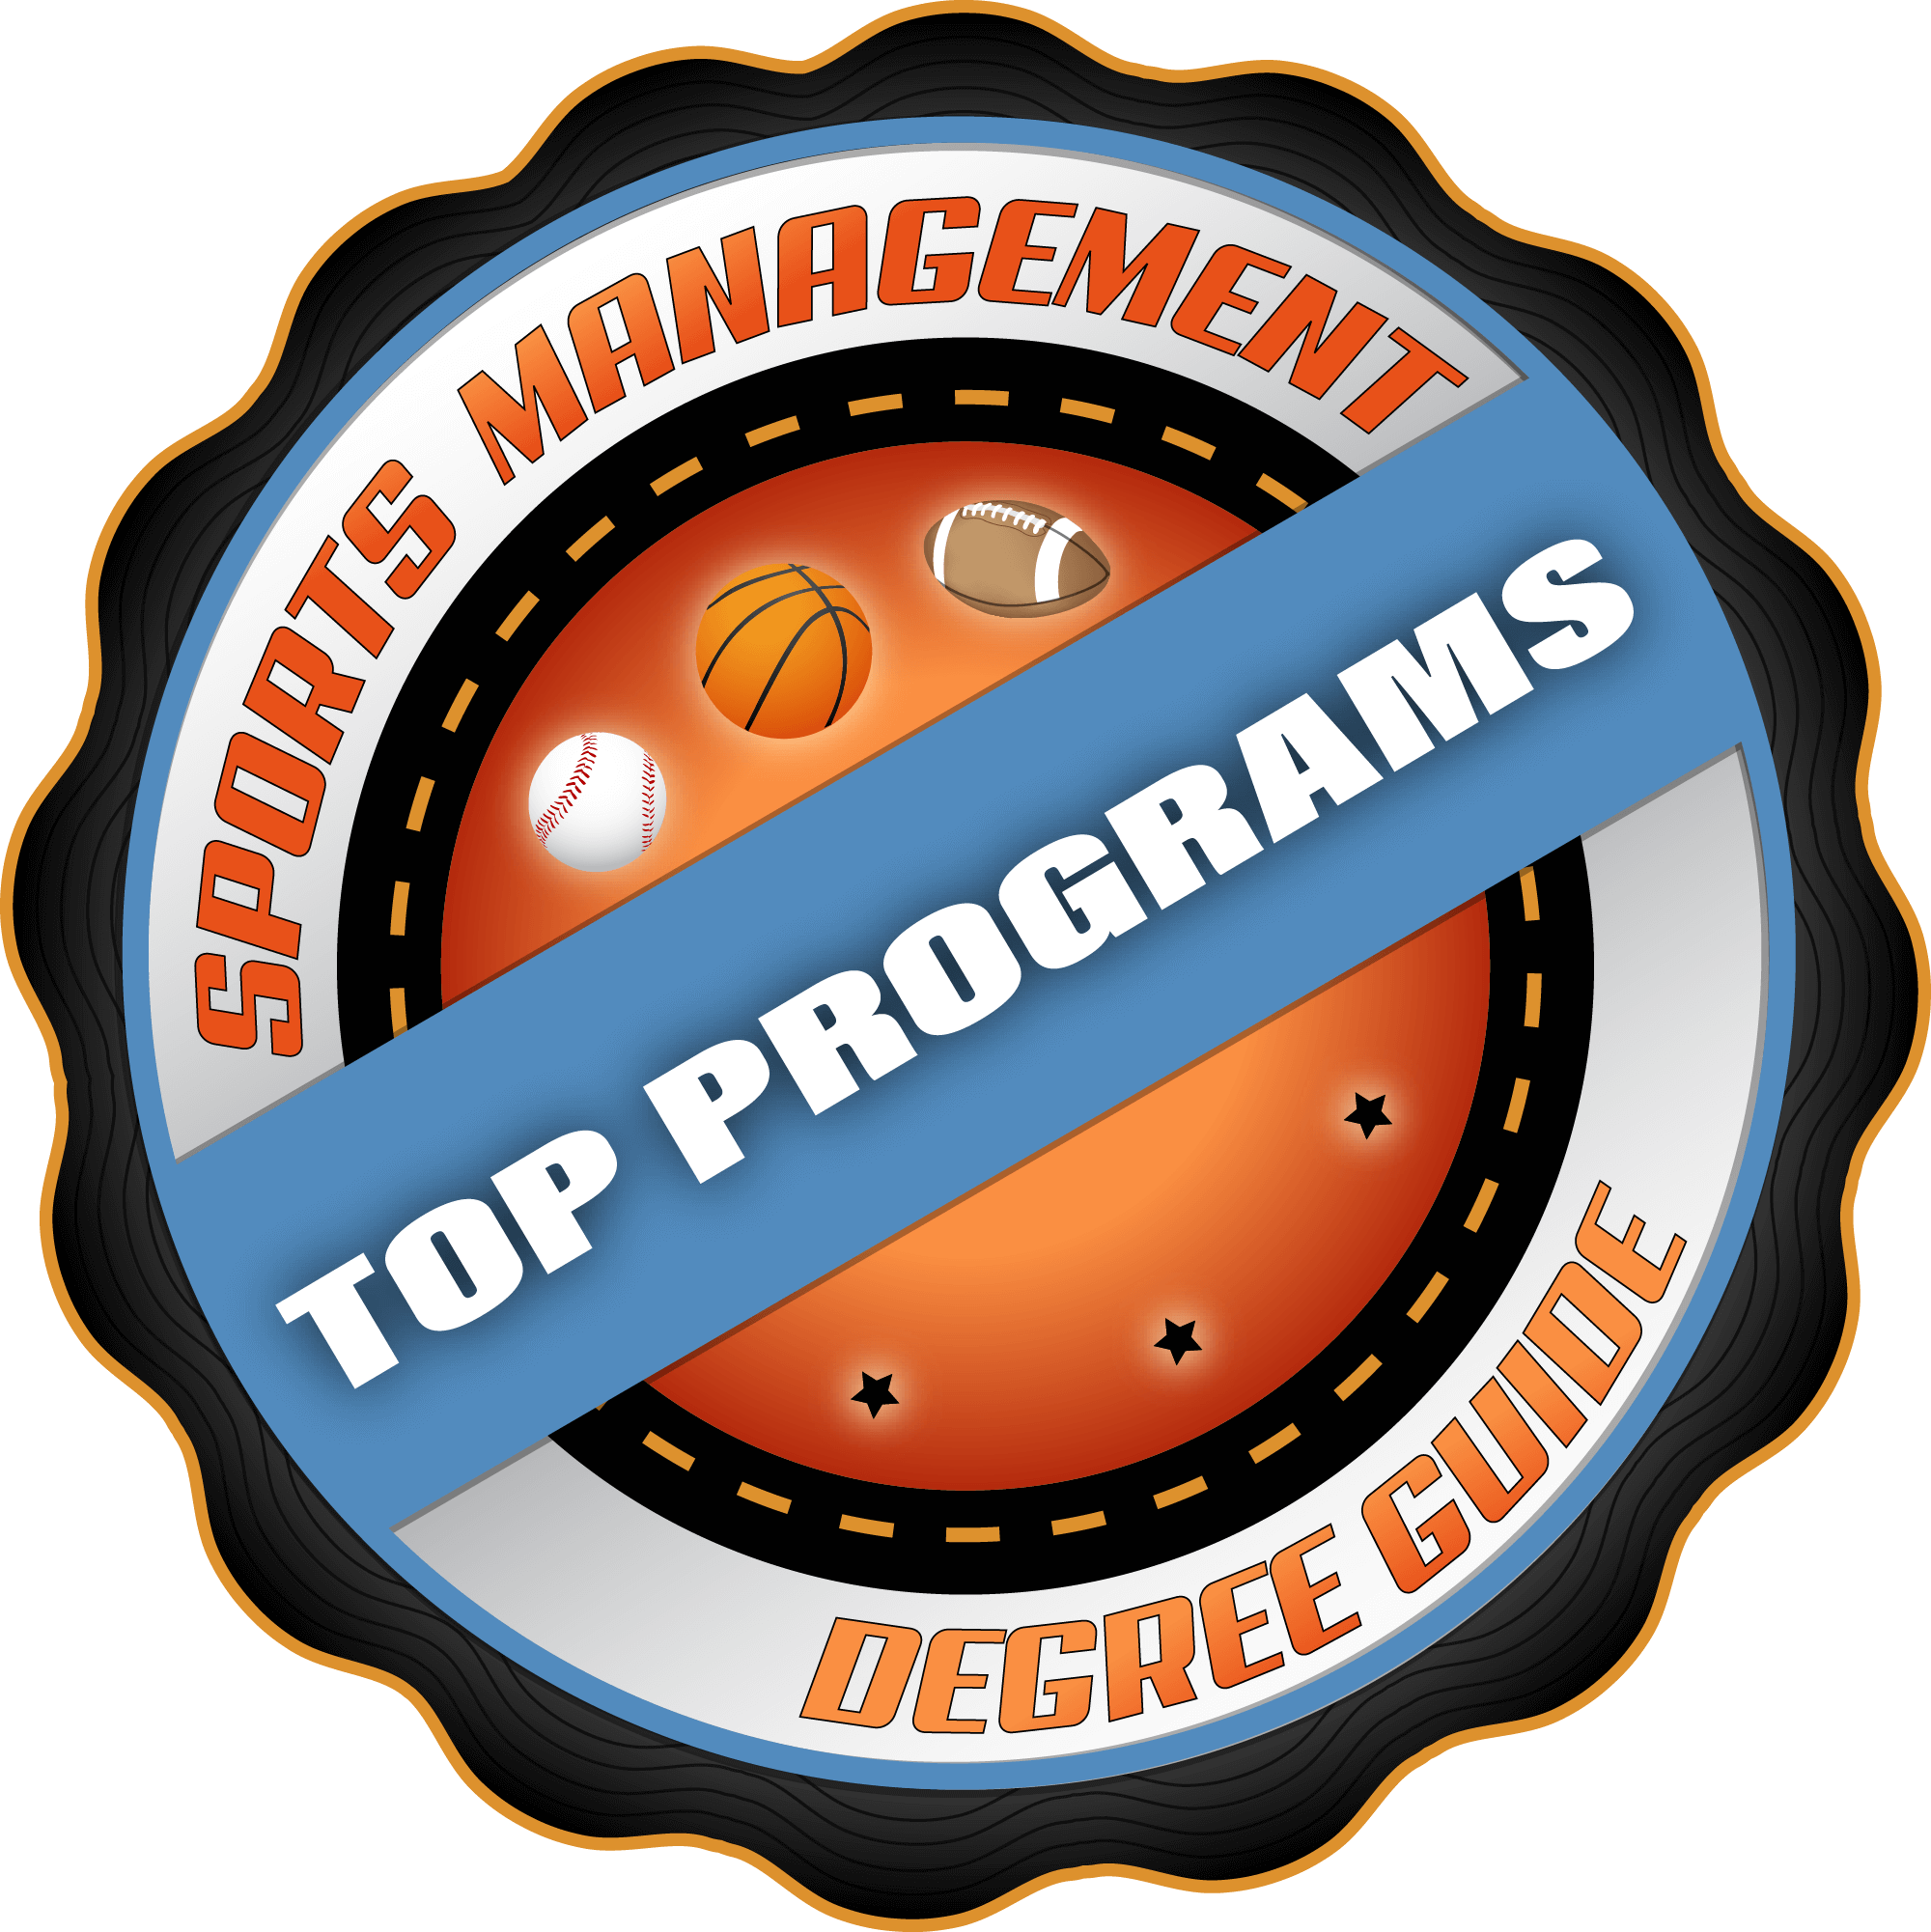 25 Best Online Bachelor's Degree Programs in Sport Management 2018